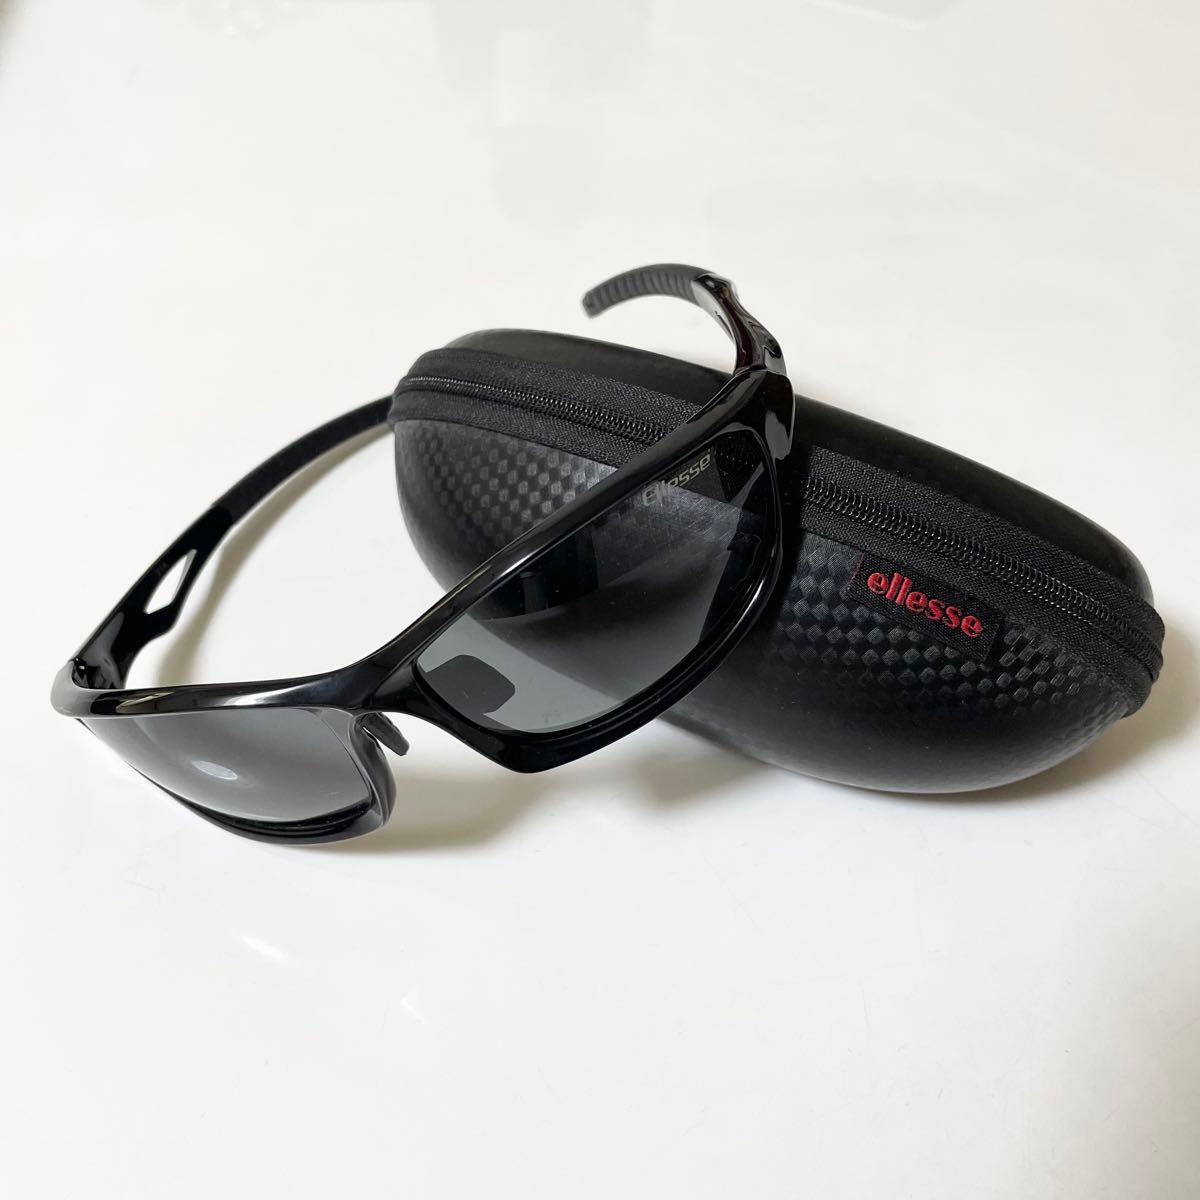 エレッセ スポーツサングラス メンズ 偏光サングラス 紫外線カット ブラック/シルバー ES-S203H-C2 